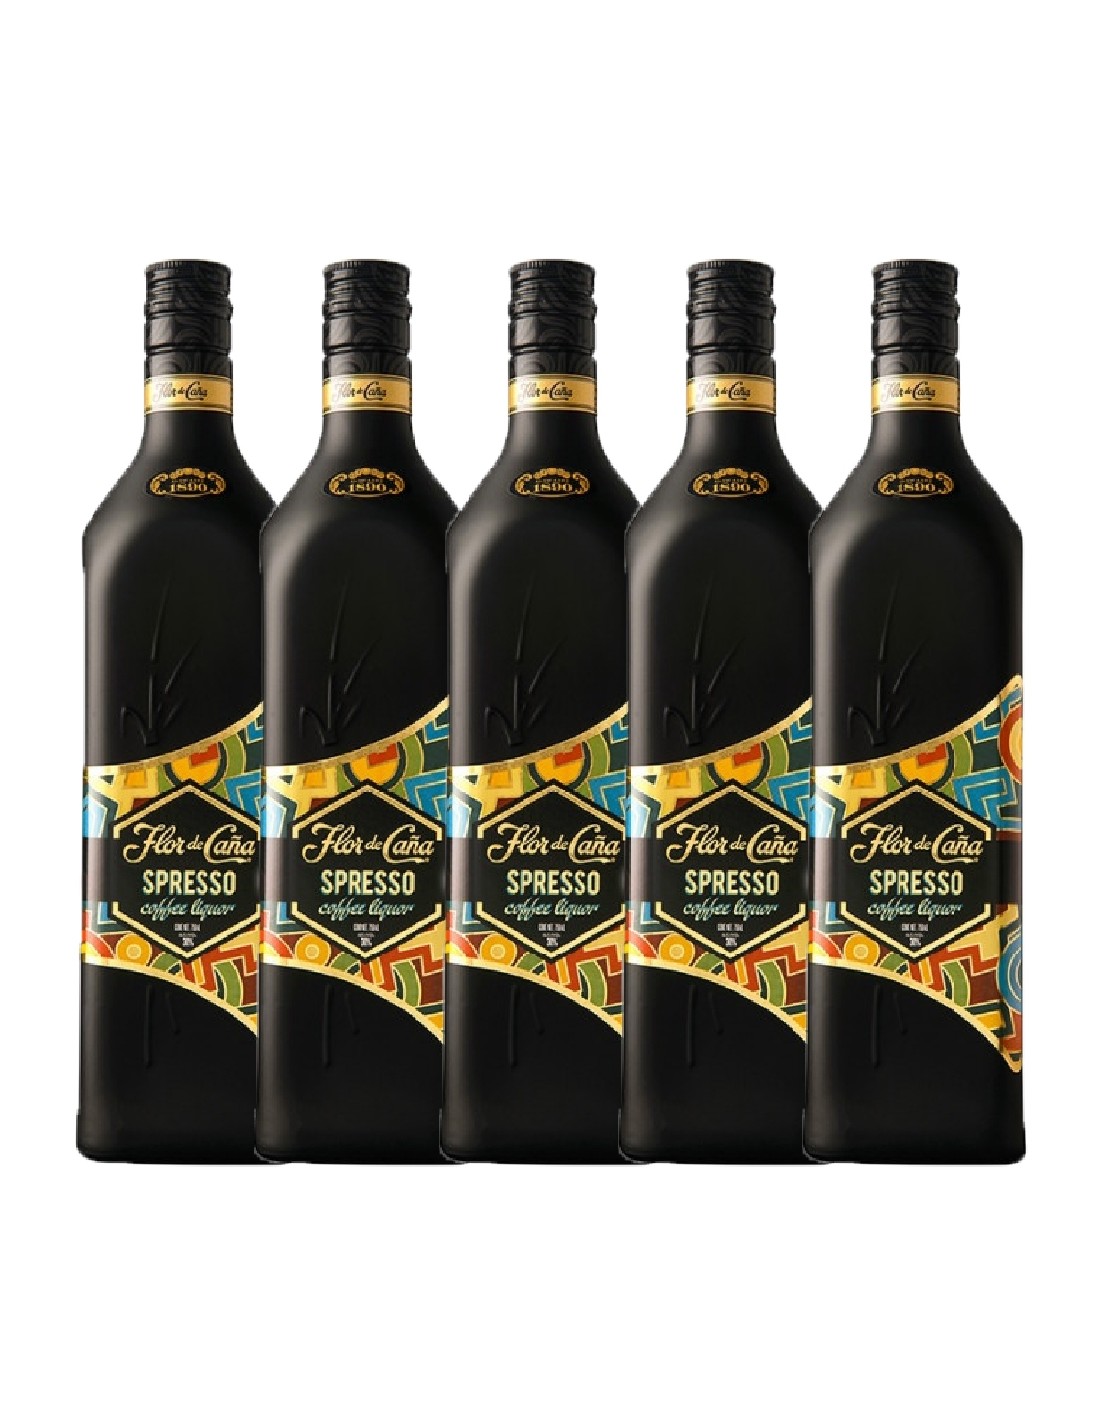 Pachet 5 sticle Rom negru Flor De Cana Spresso, 0.7L alcooldiscount.ro